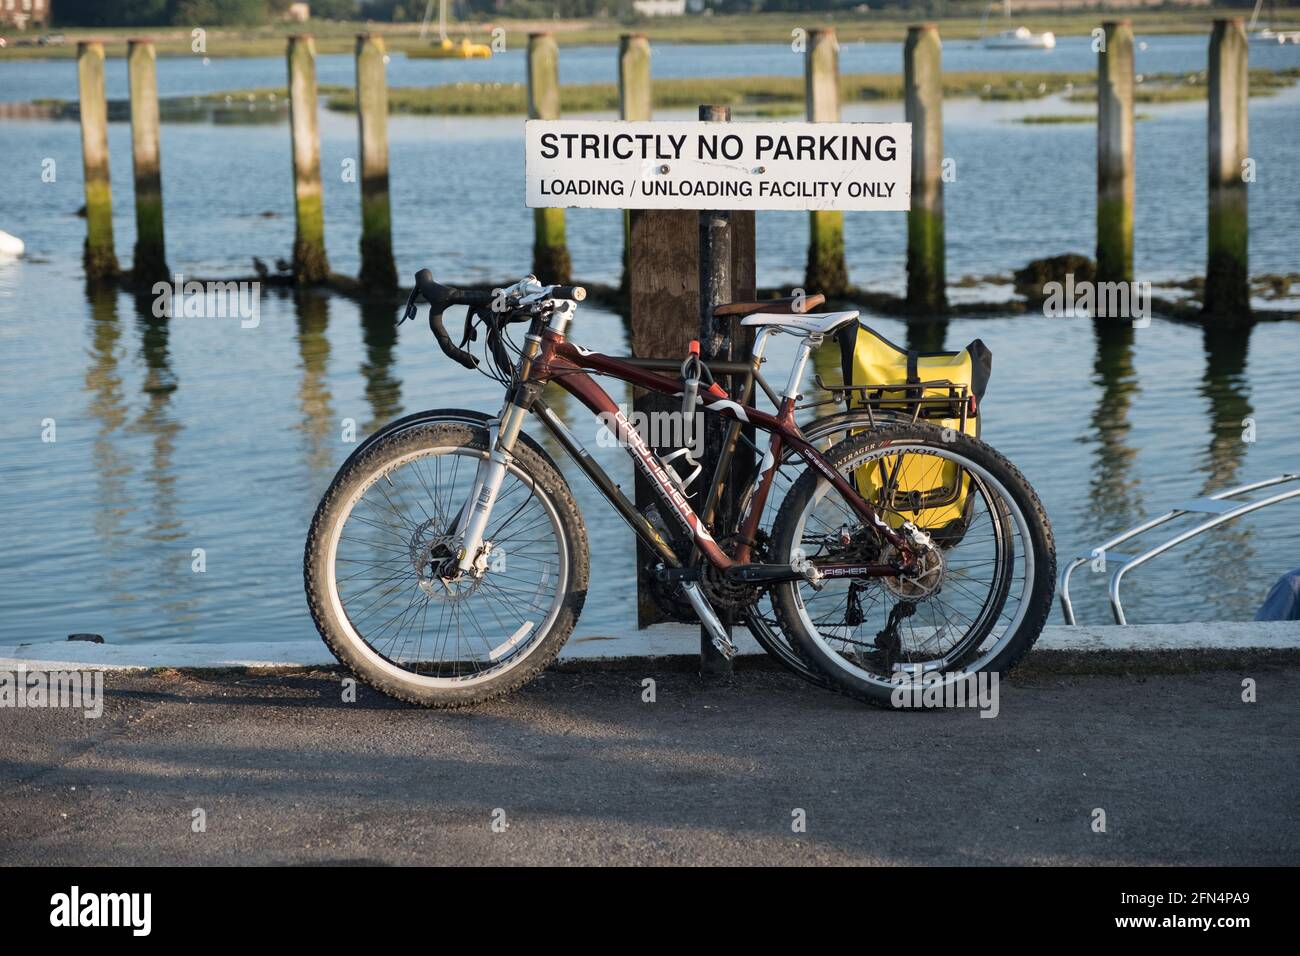 Deux vélos à pédales garés au bord de la mer contre un avis disant strictement pas de stationnement. Banque D'Images